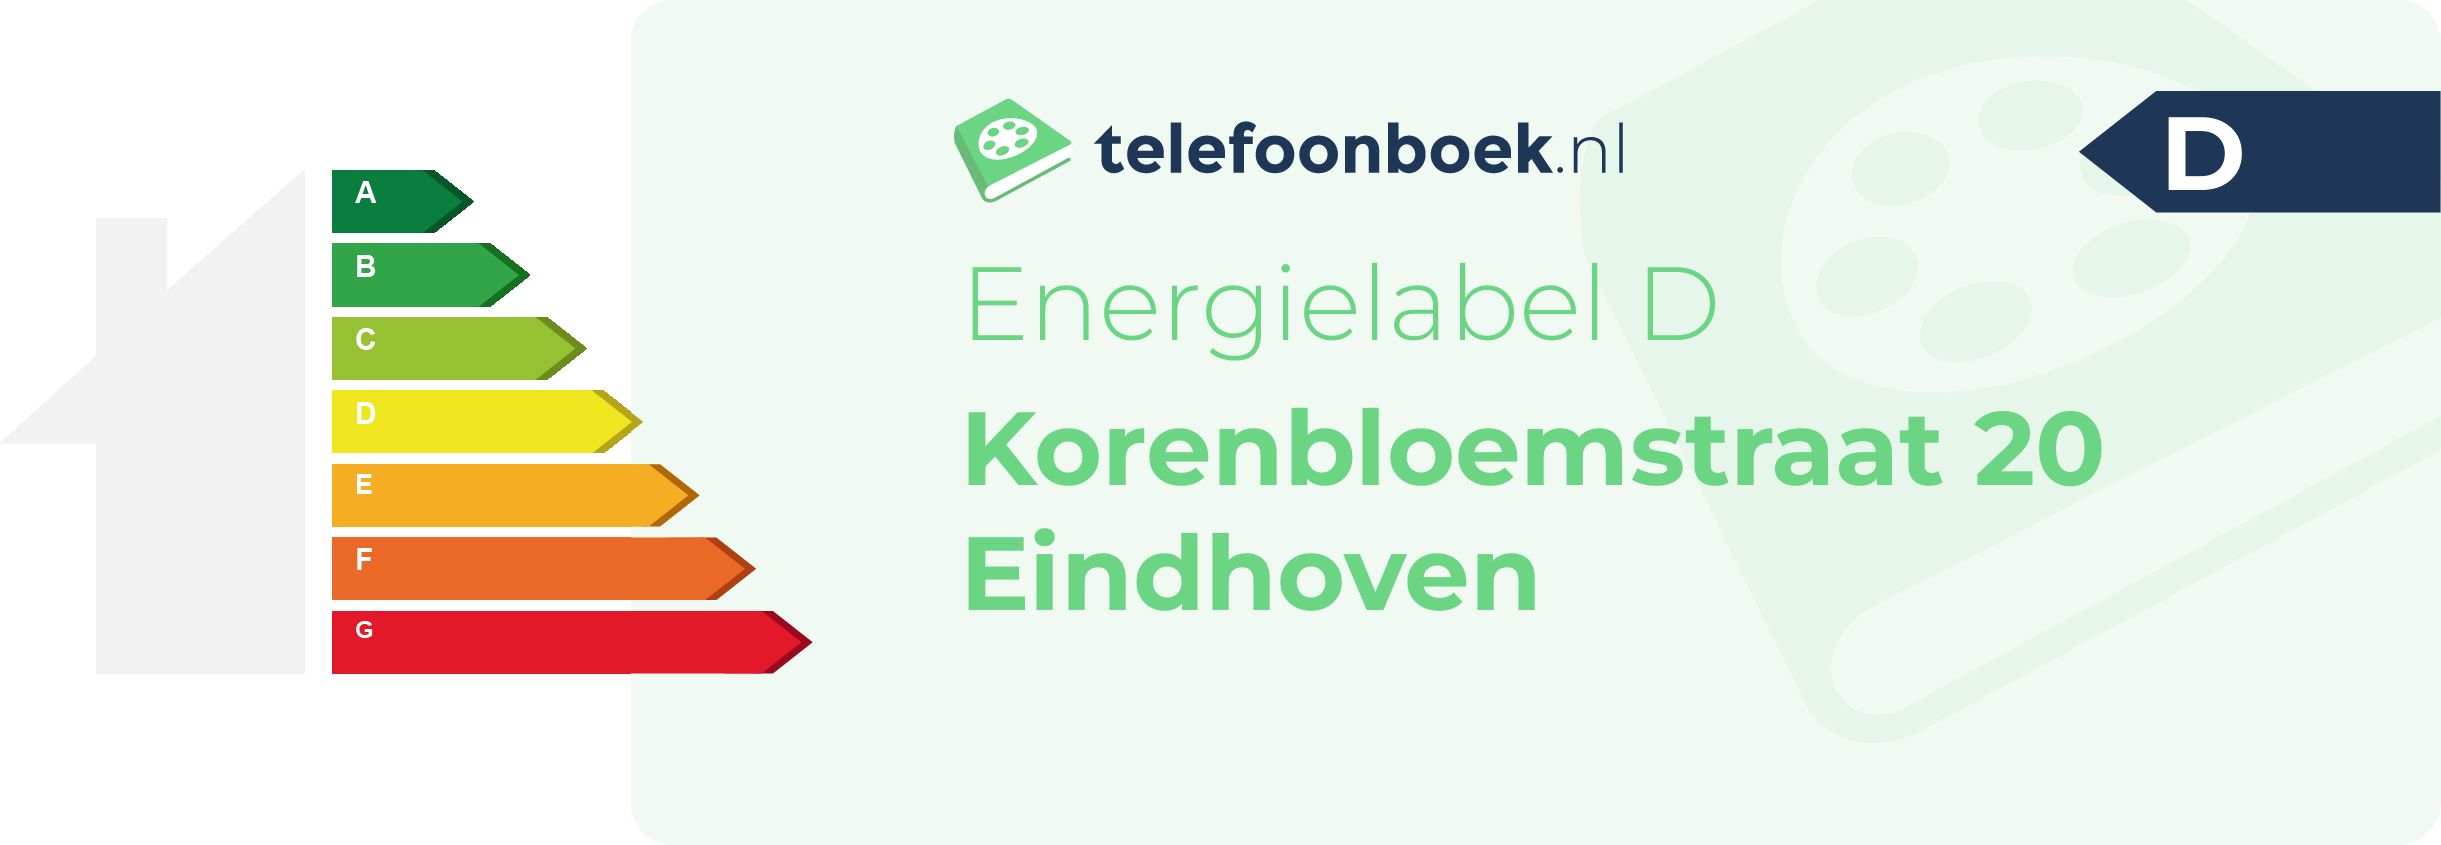 Energielabel Korenbloemstraat 20 Eindhoven